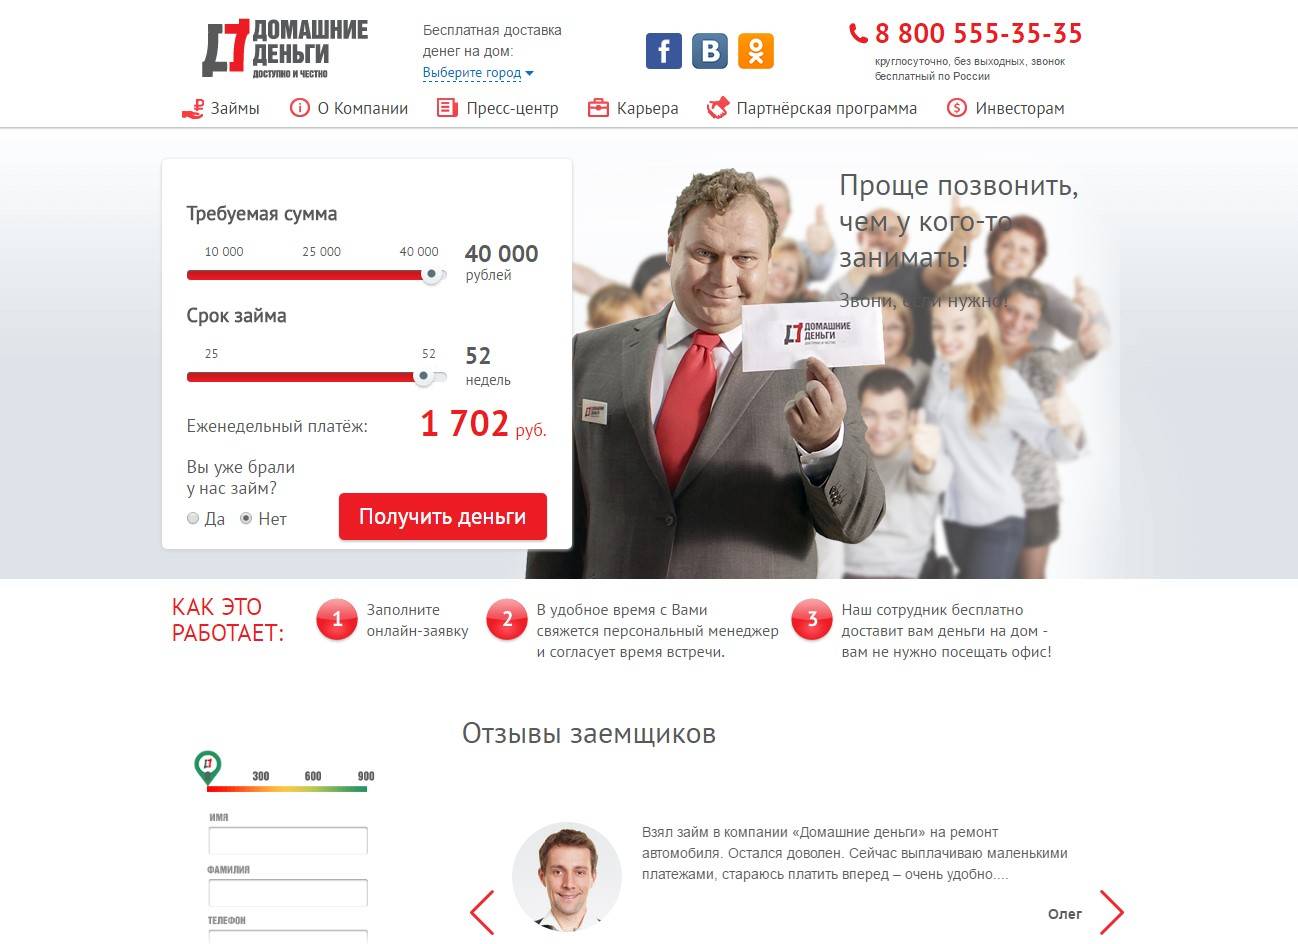 Займы в мкк «удобные деньги» на счет в банке до 50 000 рублей, отправка онлайн-заявки, условия